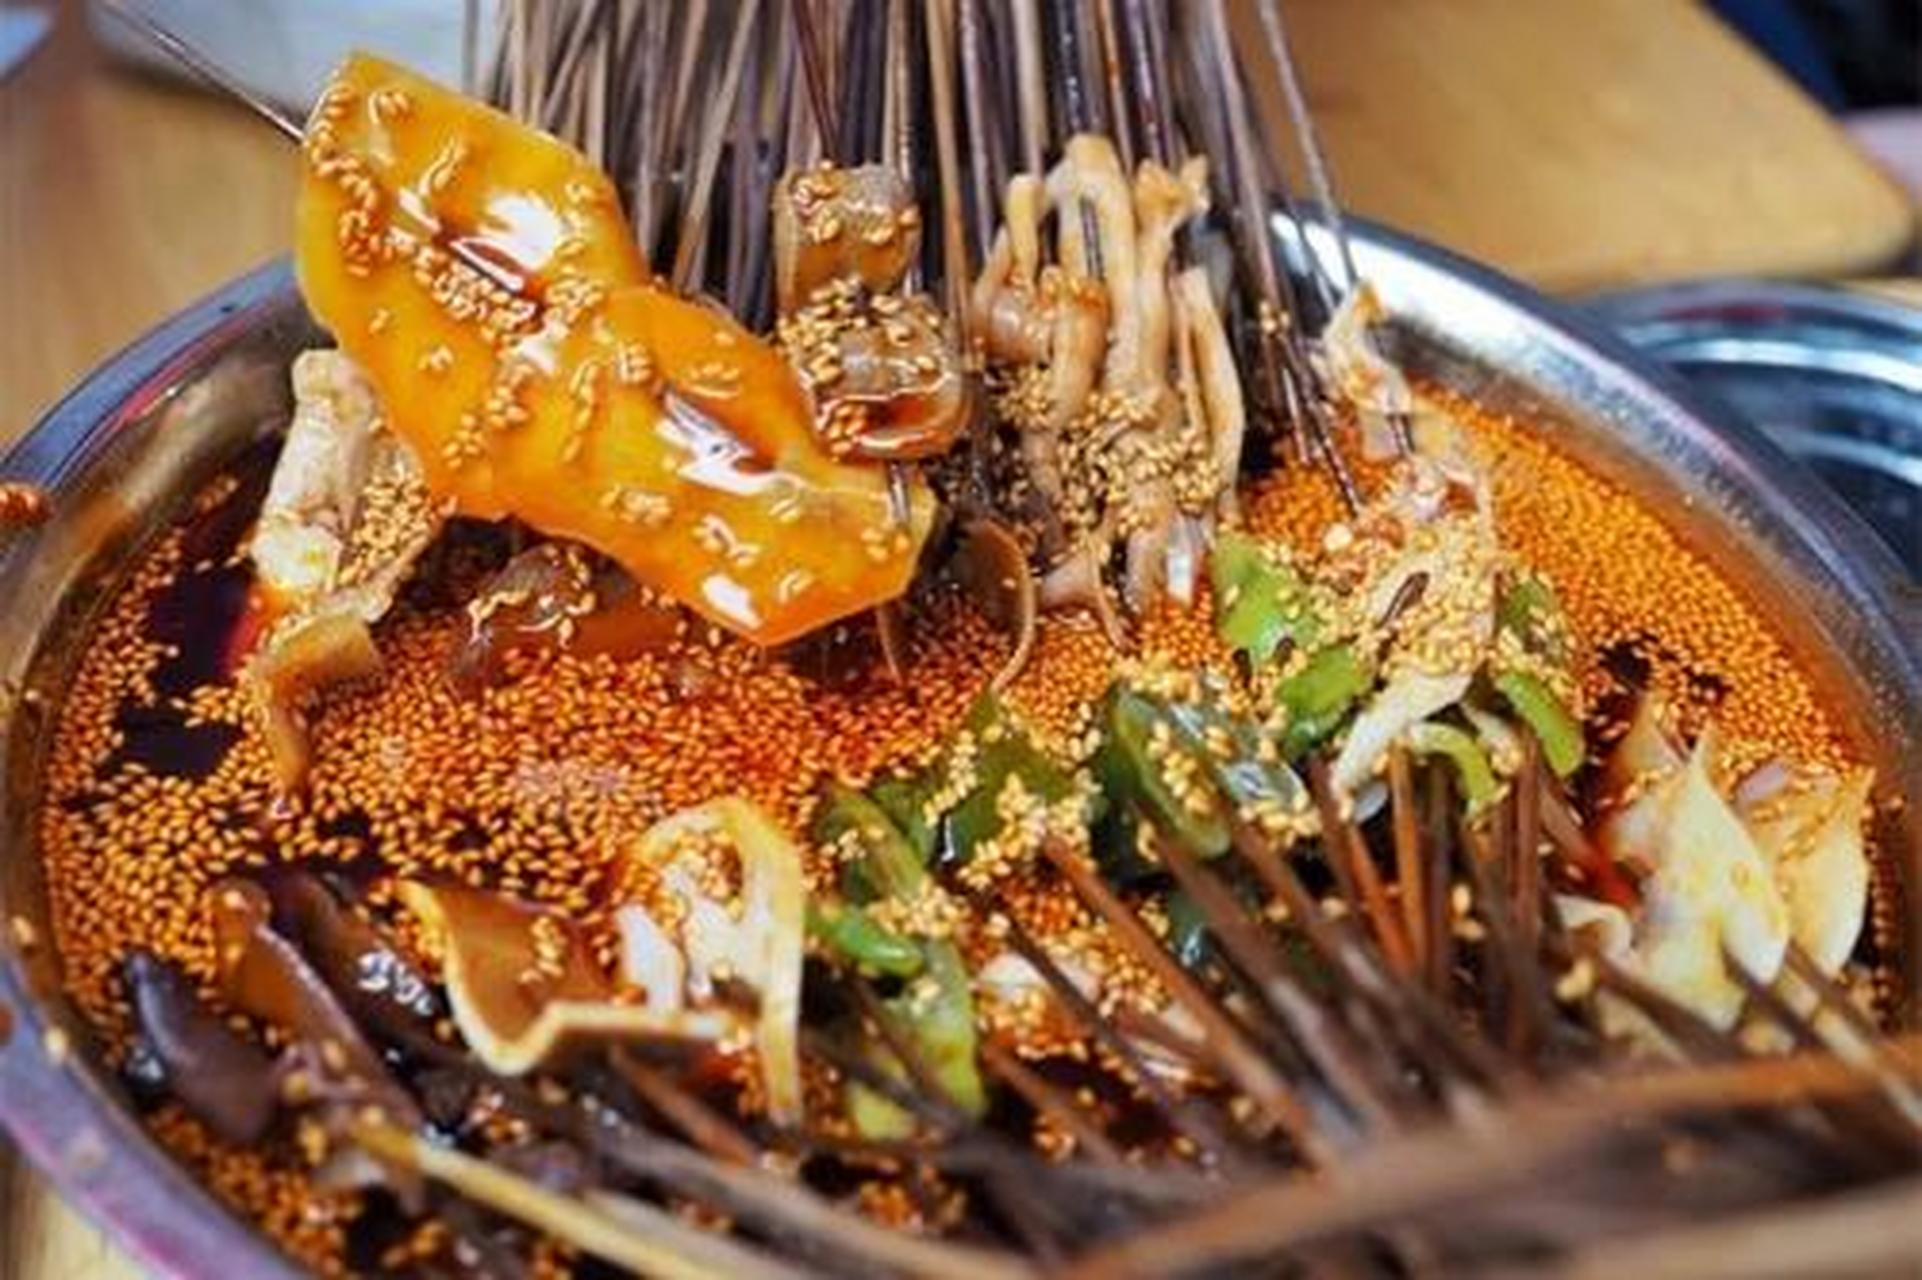 钵钵鸡是一种四川传统名小吃,属于川菜系